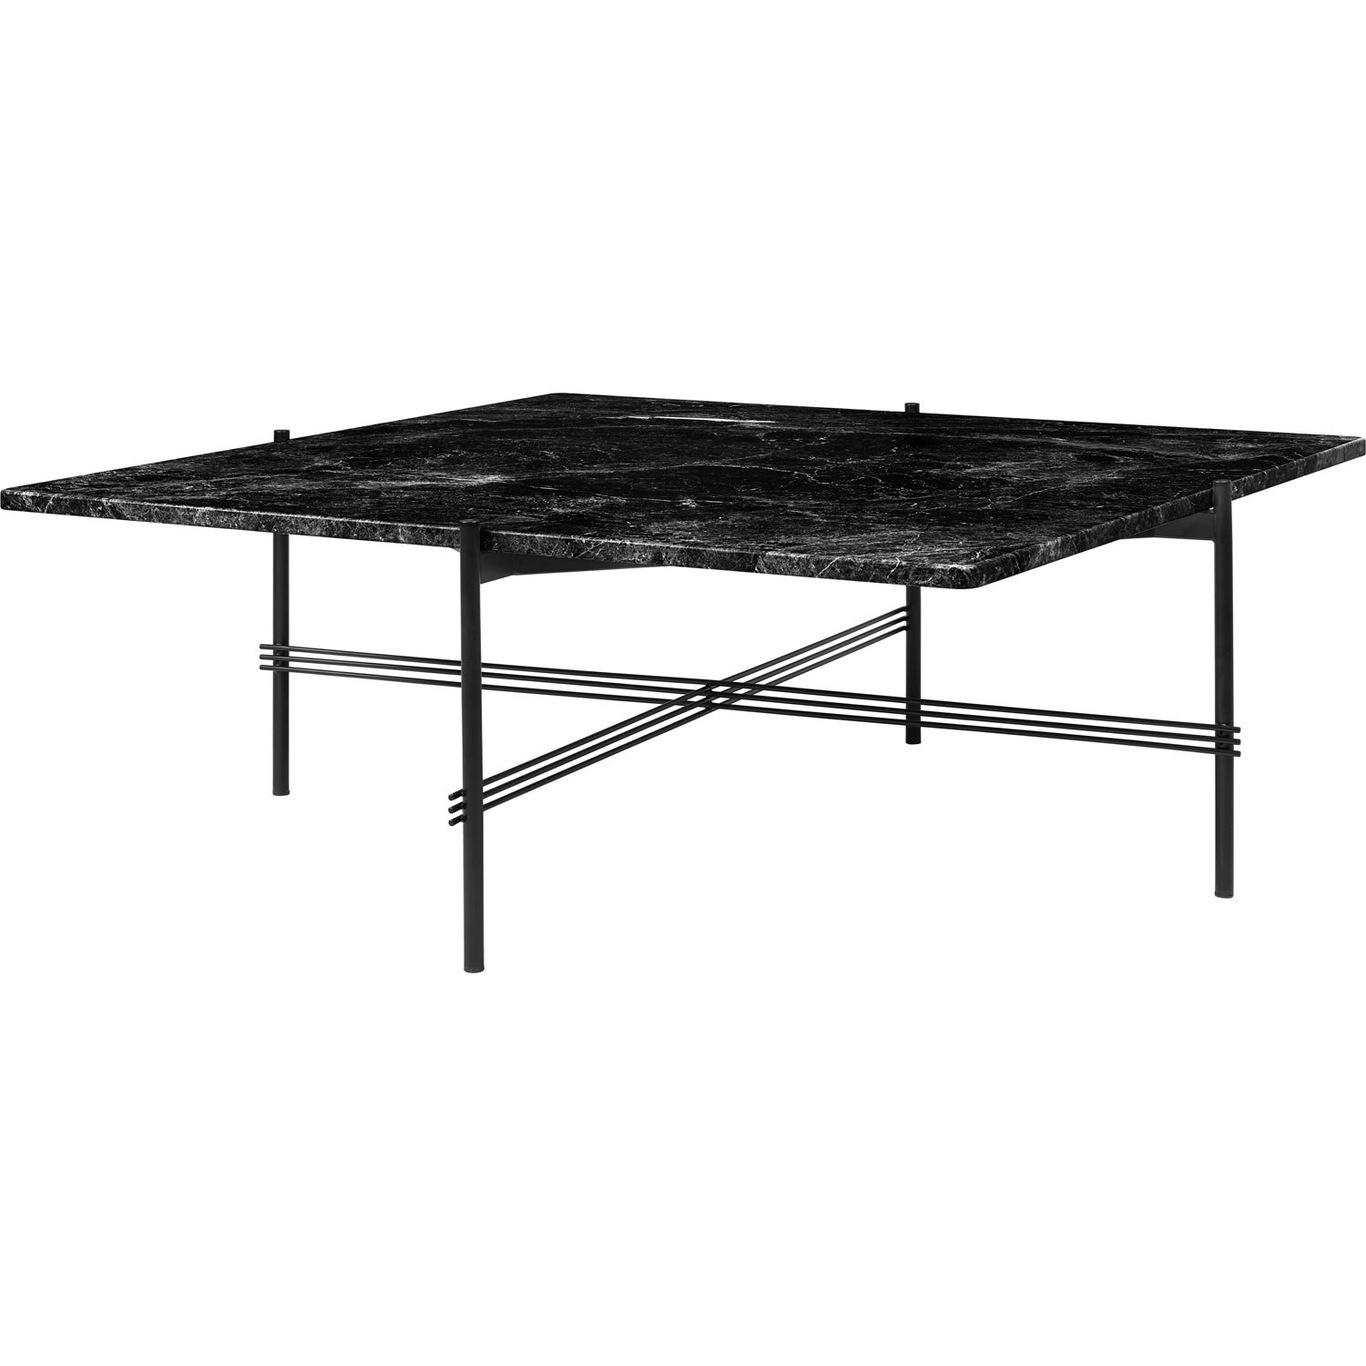 TS Coffee Table 105x105 cm, Black / Black Marble